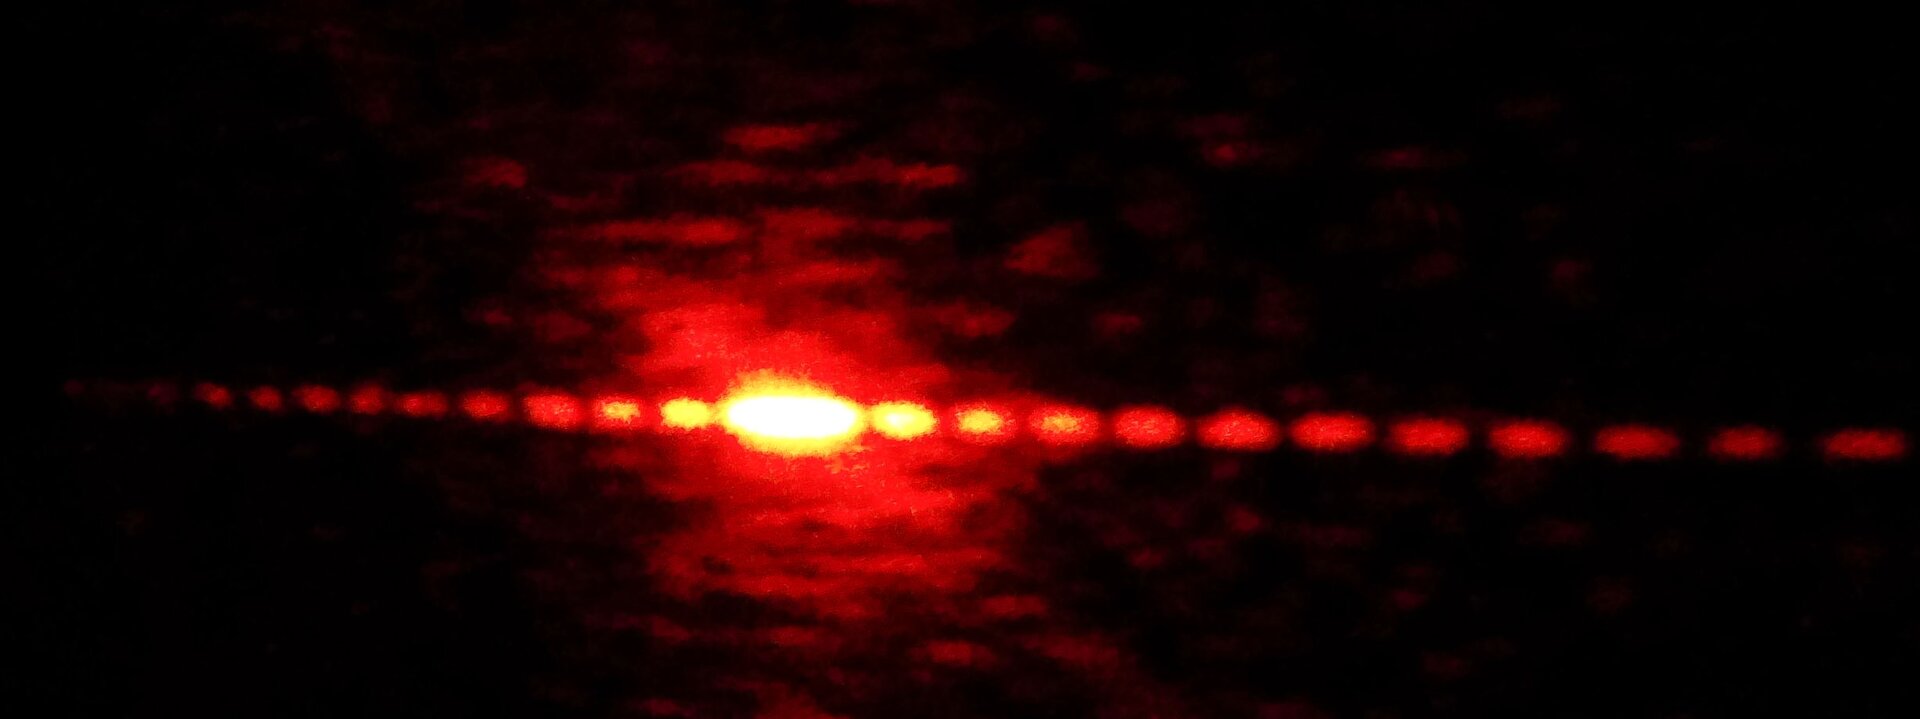 Rys. 1. Ilustracja przedstawia prążki powstałe przy przejściu światła monochromatycznego przez siatkę dyfrakcyjną. Światło monochromatyczne, to światło o jednej długości fali, a zatem i jednej barwie. Na czarnym tle pokazano czerwone punkty układające się na linii prostej biegnącej od lewego do prawego brzegu ilustracji. Środkowy punkt jest najjaśniejszy. Im dalej oddalone są punkty od punktu centralnego tym są one ciemniejsze, ponieważ natężenie światła w tych punktach jest coraz mniejsze. Prążki po lewej i prawej stronie od punktu centralnego rozmieszczone są symetrycznie.